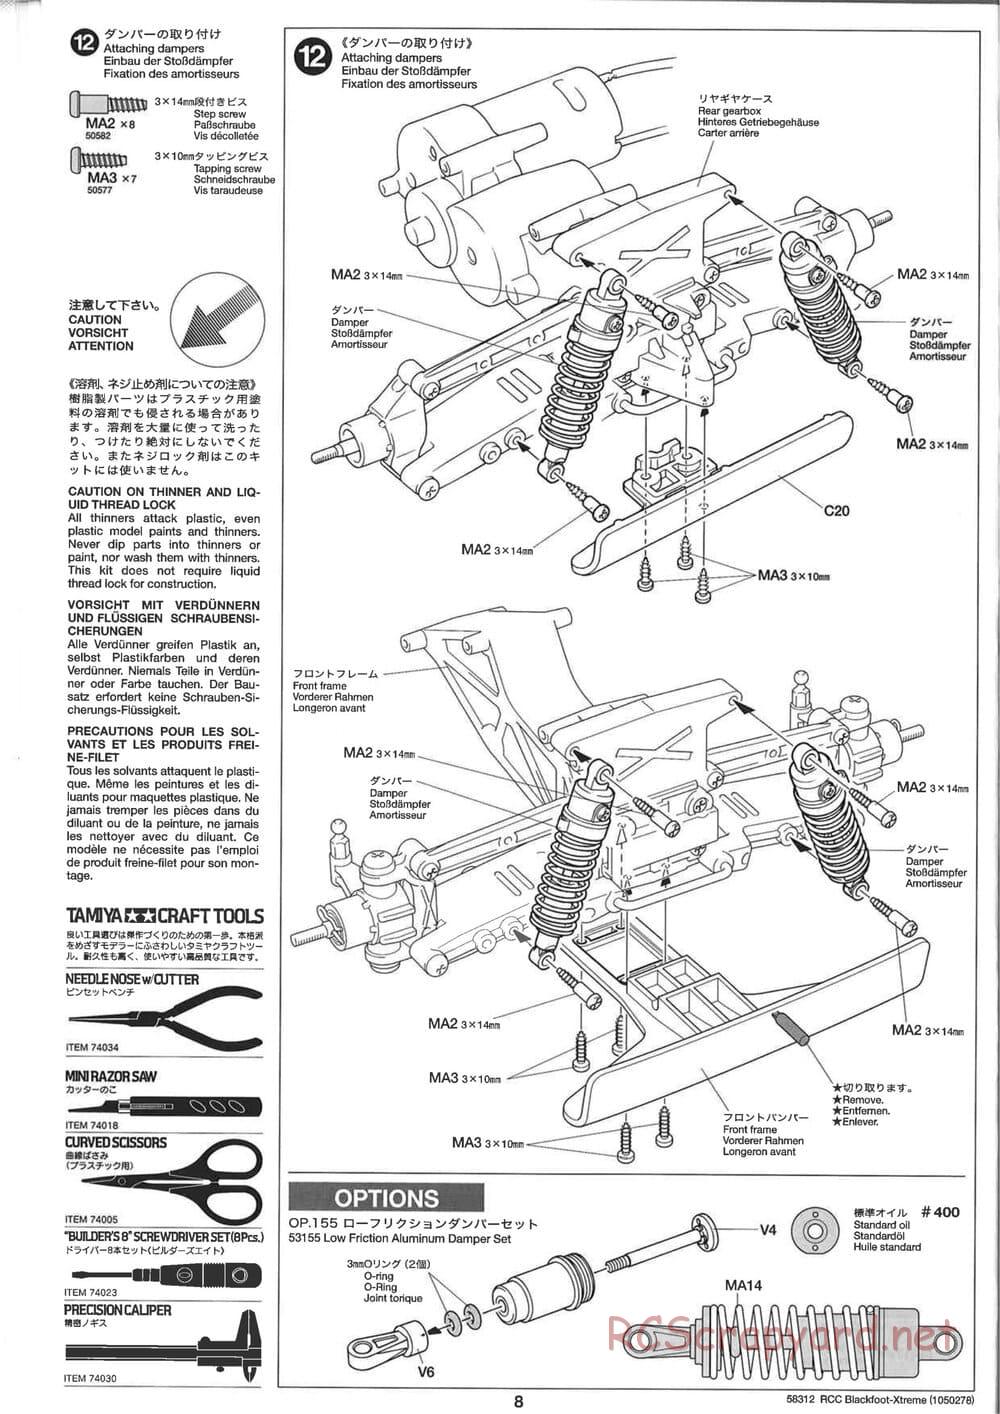 Tamiya - Blackfoot Xtreme - WT-01 Chassis - Manual - Page 8